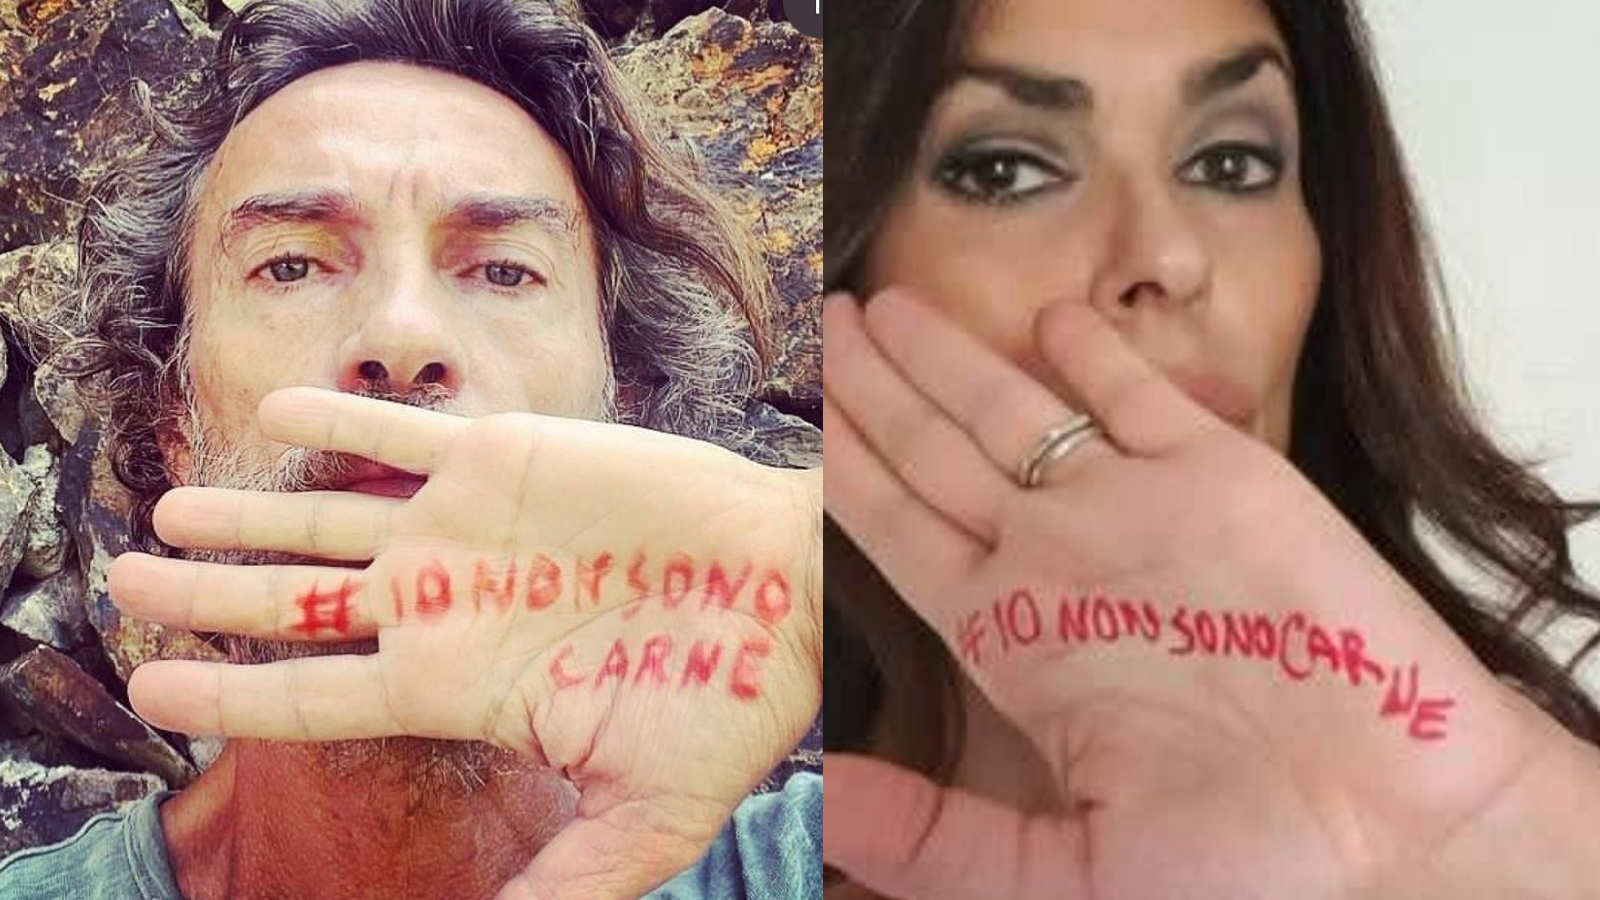 Stupro di Palermo, l'appello delle celebrità italiane sui social: #IoNonSonoCarne